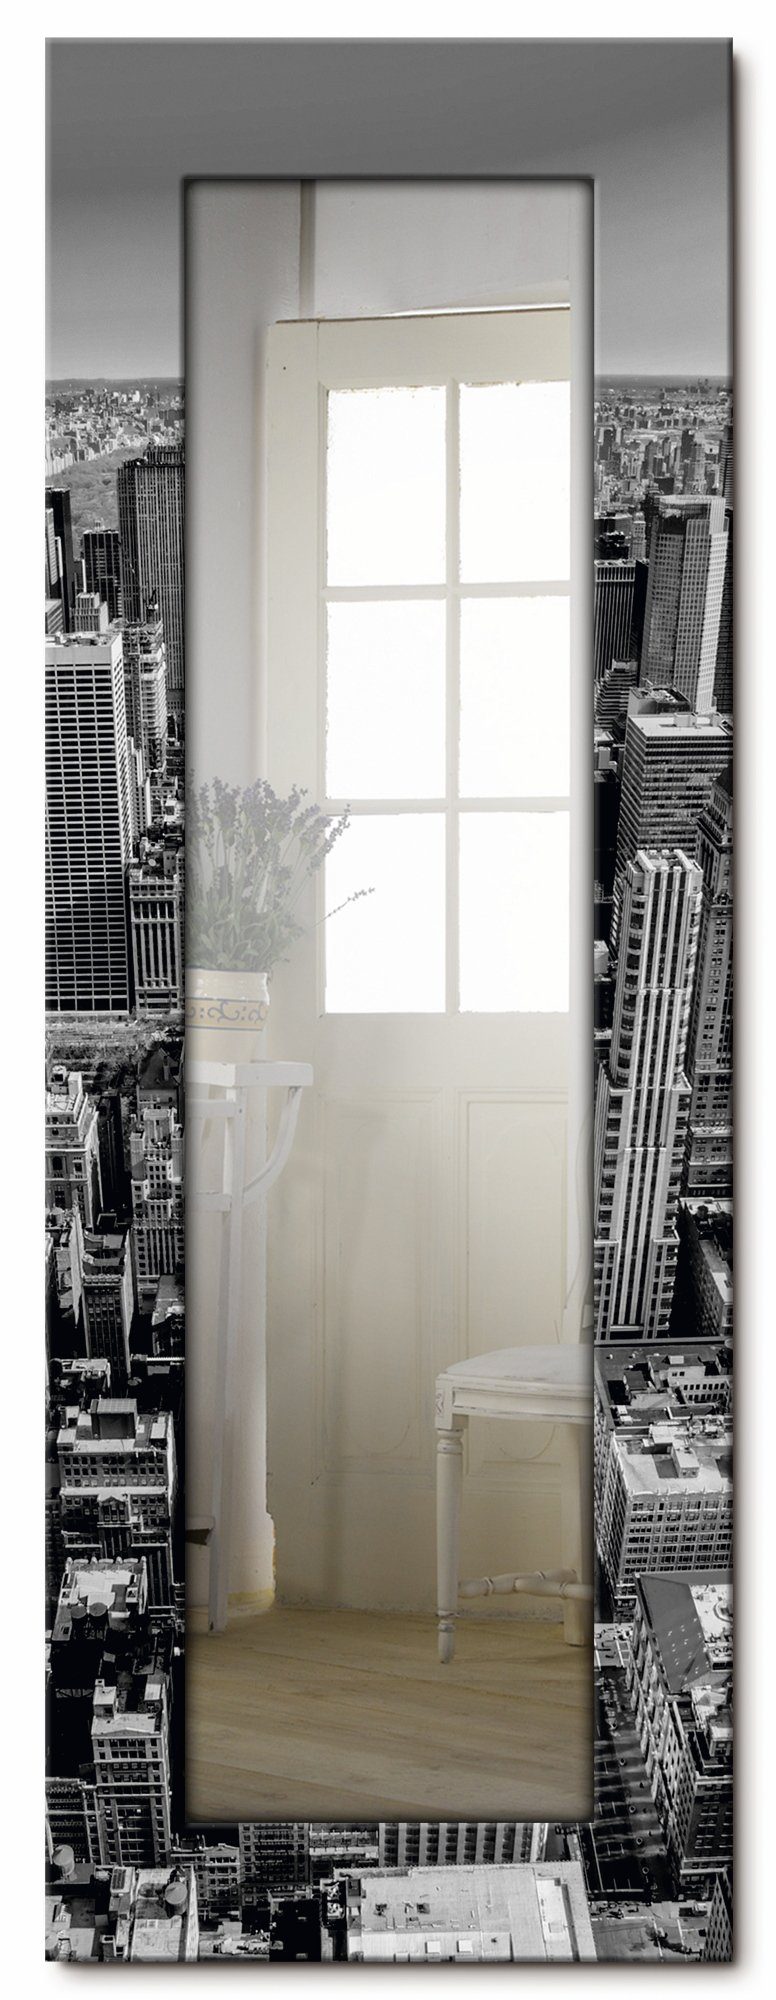 Artland Sierspiegel Luftbild van Manhattan New York City VS ingelijste spiegel voor het hele lichaam met motiefrand, geschikt voor kleine, smalle hal, halspiegel, mirror spiegel om